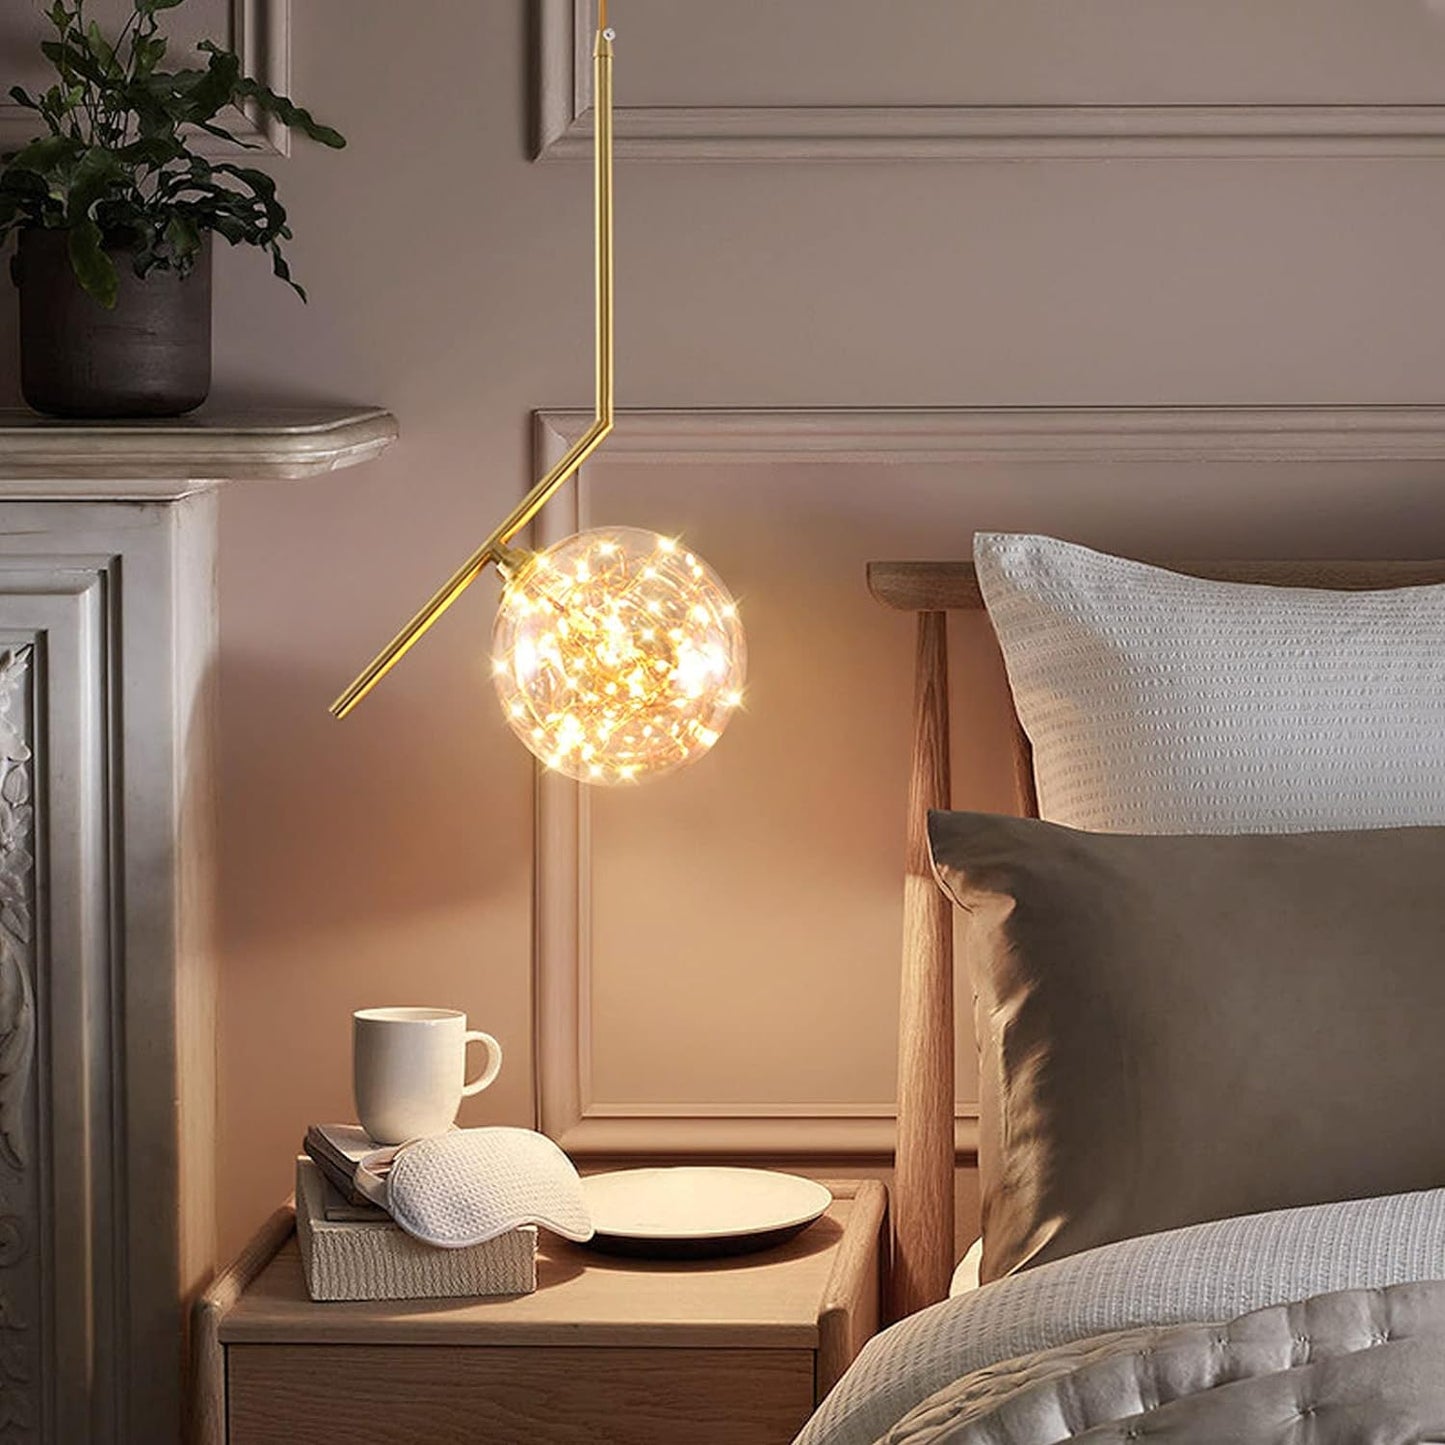 Hdc LED Fairy Ball Gold Pendant Lamp Ceiling Light - Warm White